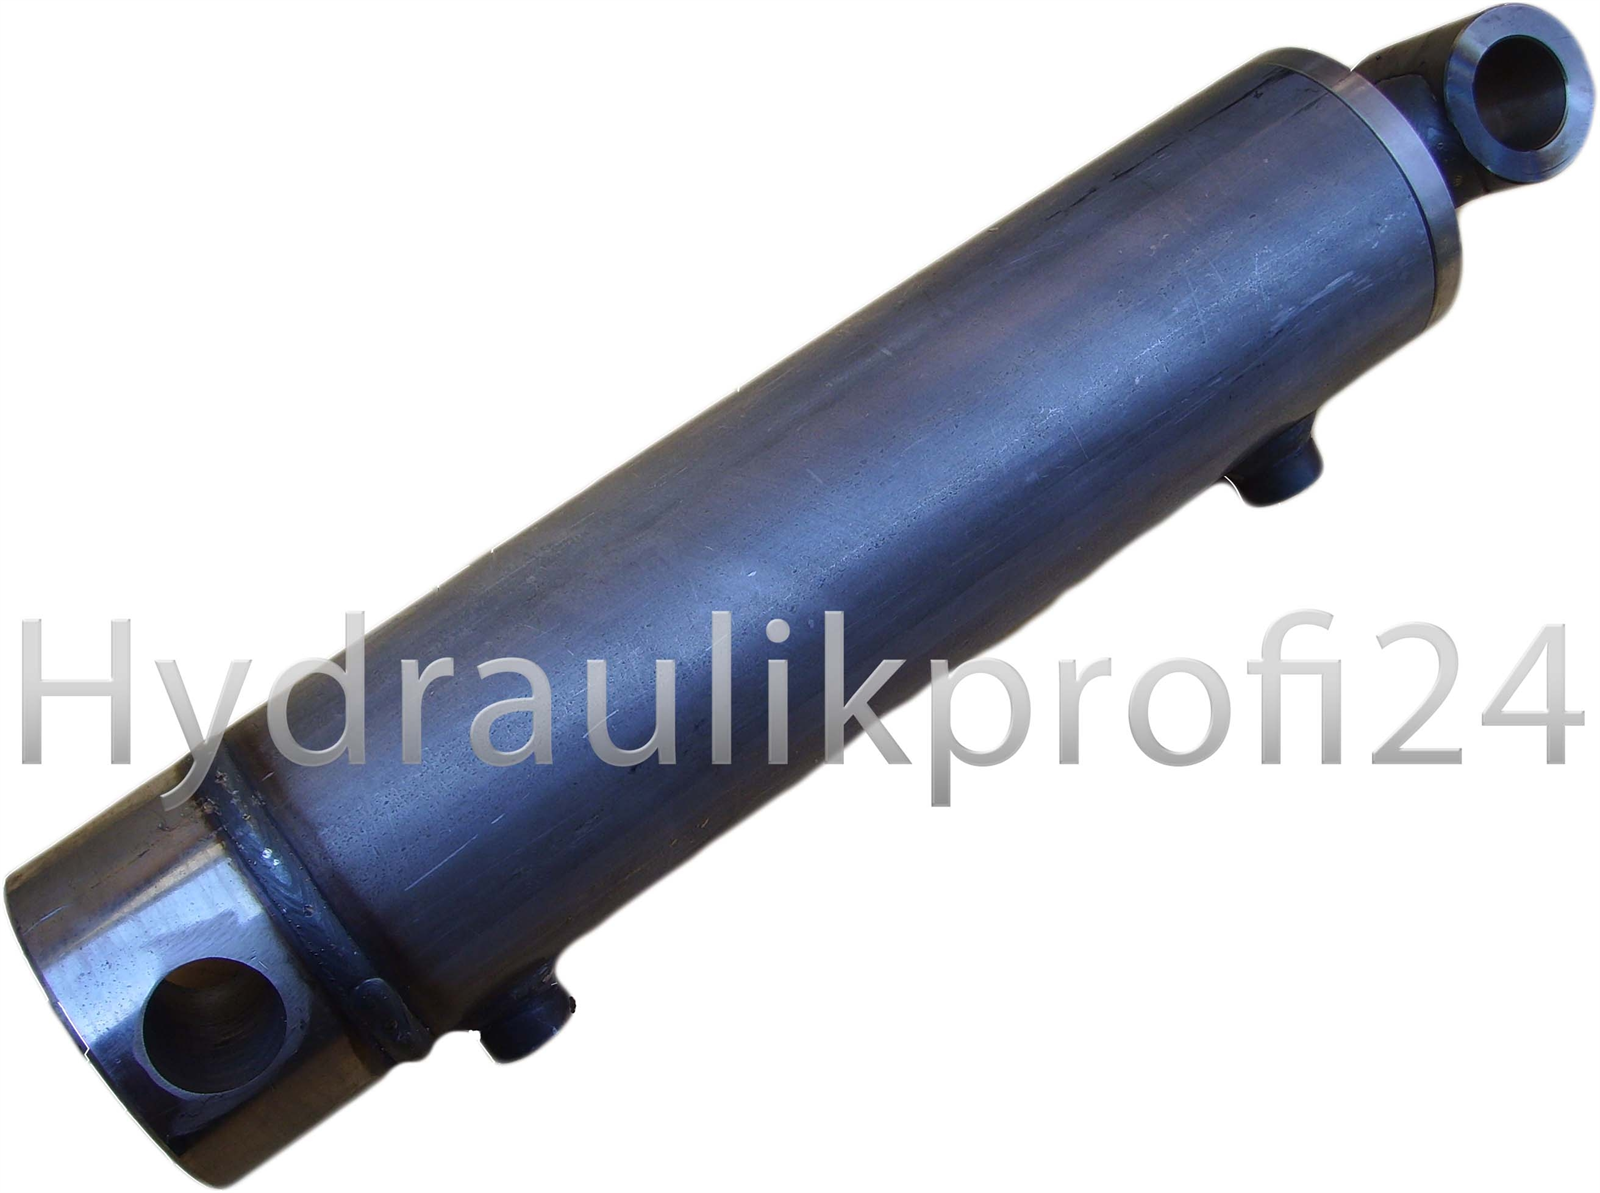 Hydraulikzylinder doppelwirkend mit Gelenkauge 50/30 (50/30-500 mm)